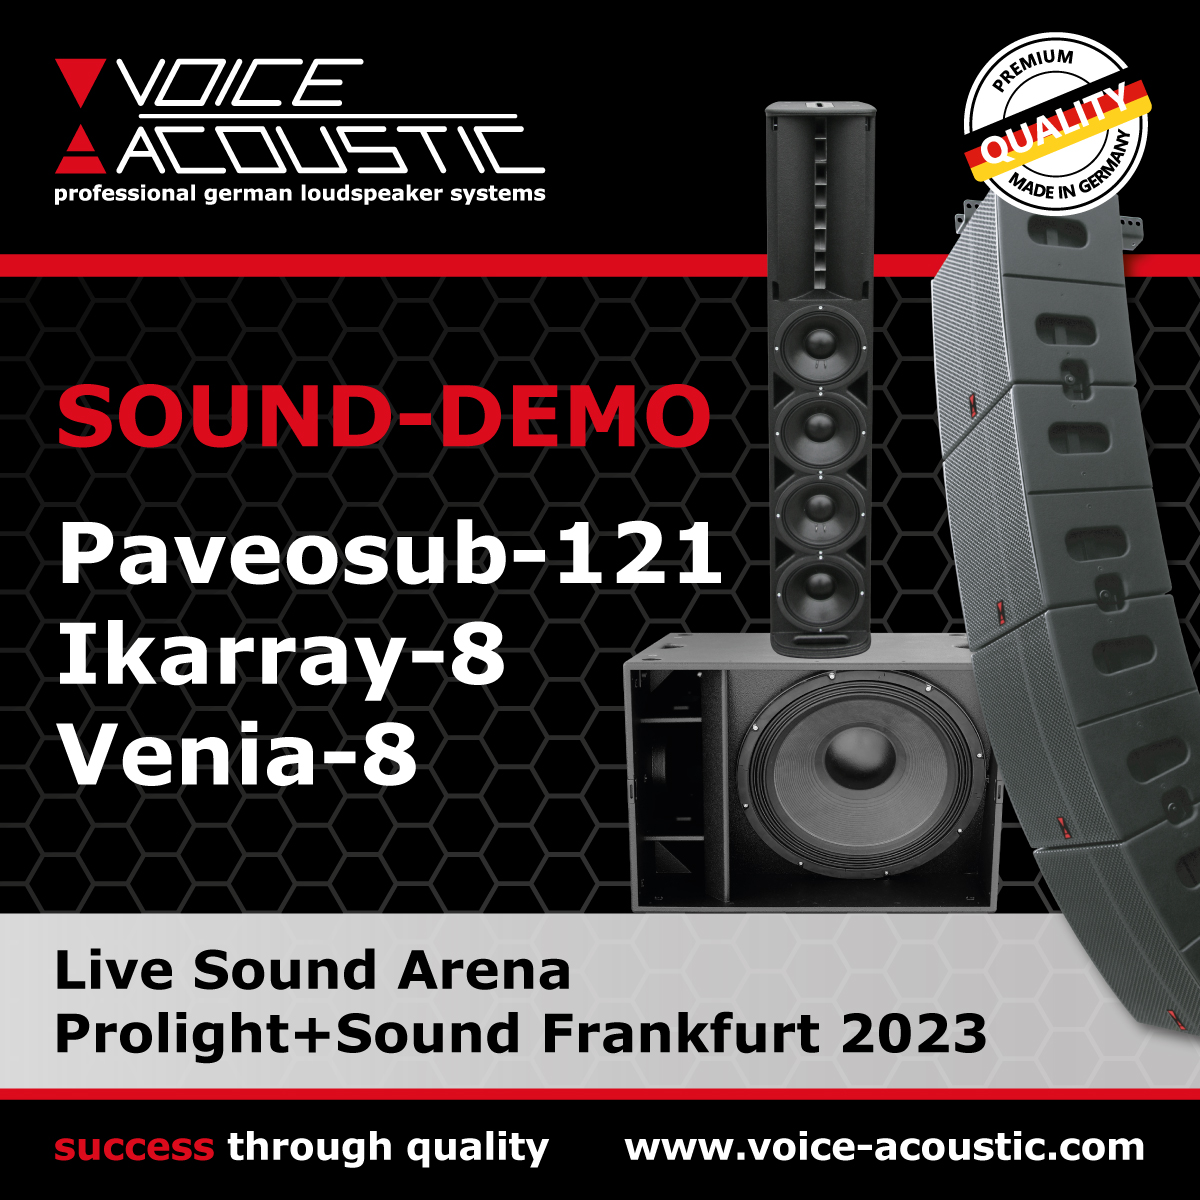 Voice-Acoustic Sound-Demo auf der Prolight + Sound 2023